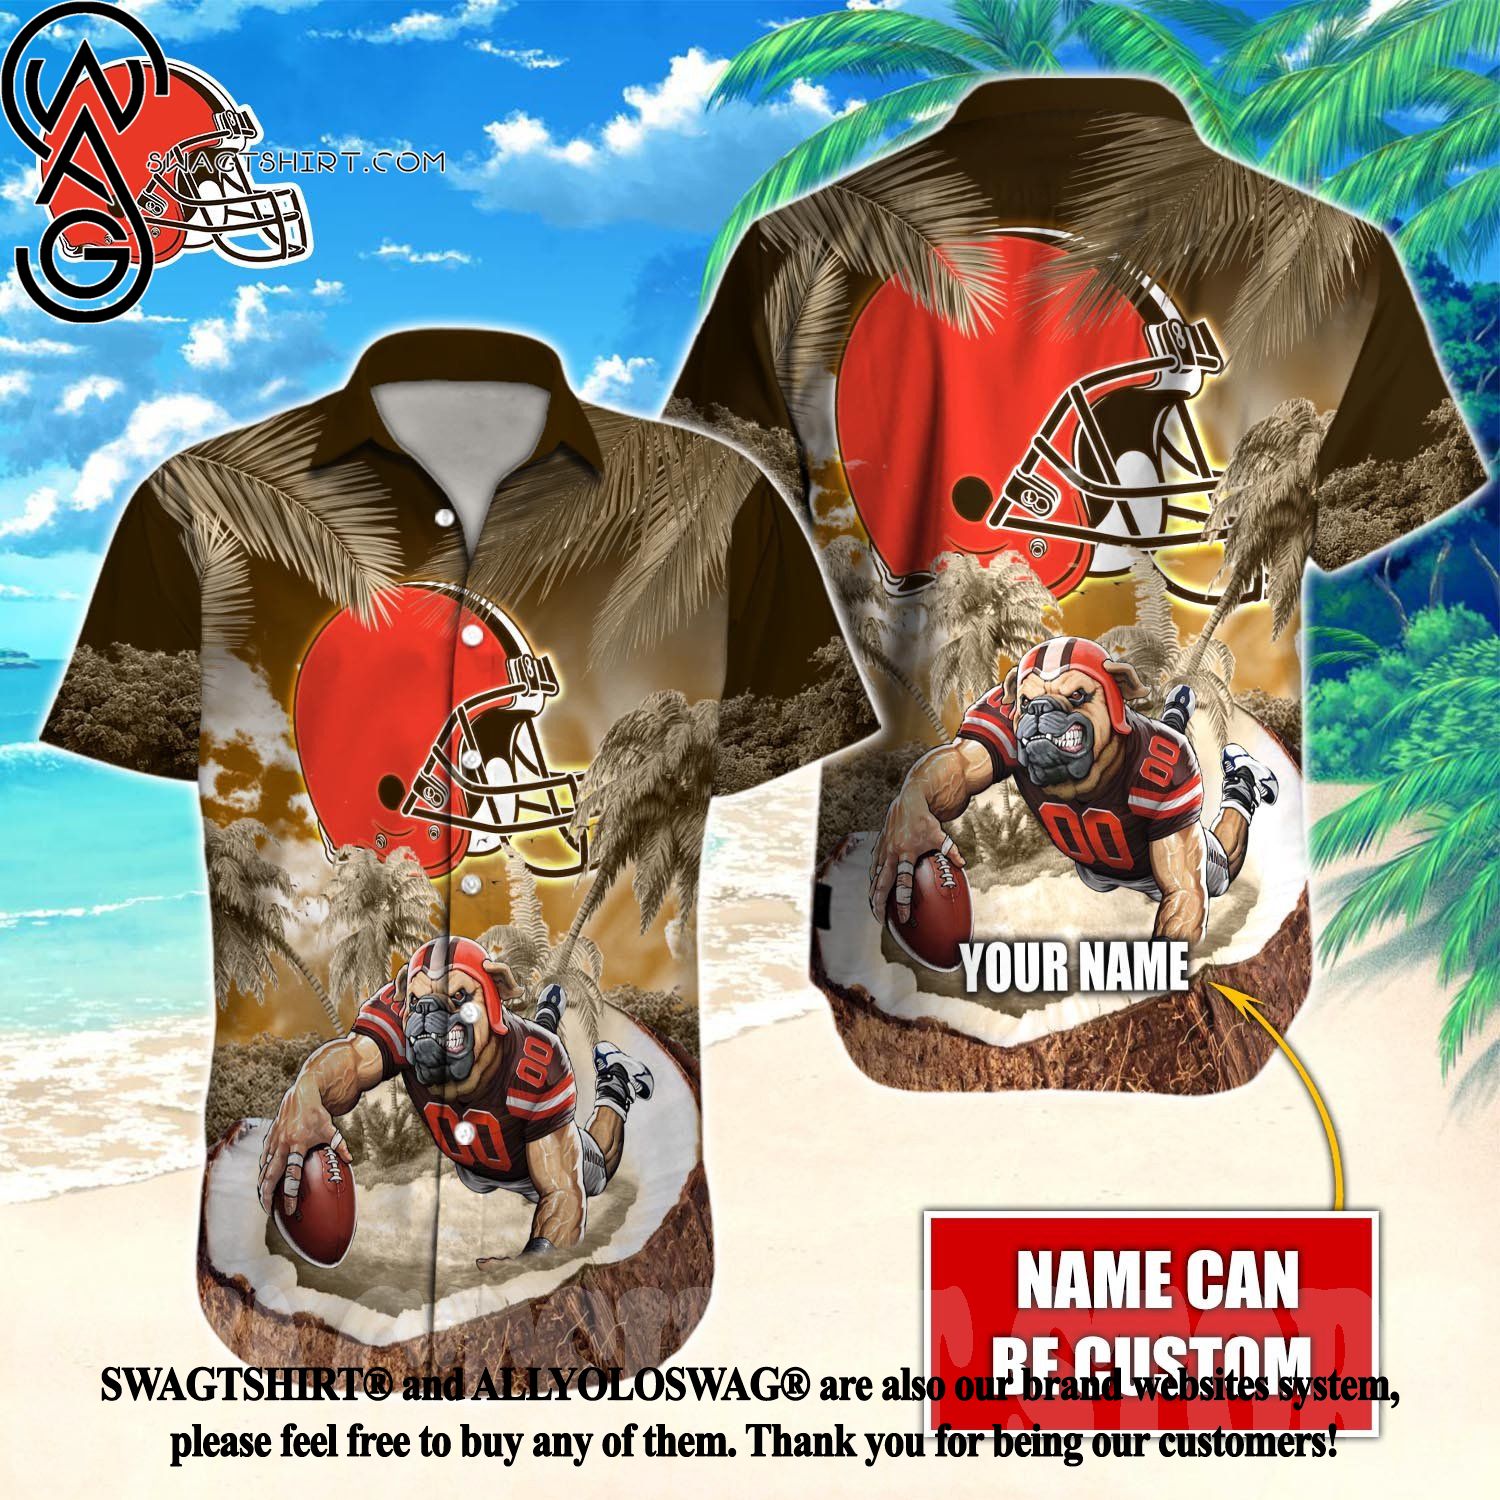 NFL Cleveland Browns Fans Louis Vuitton Hawaiian Shirt For Men And Women